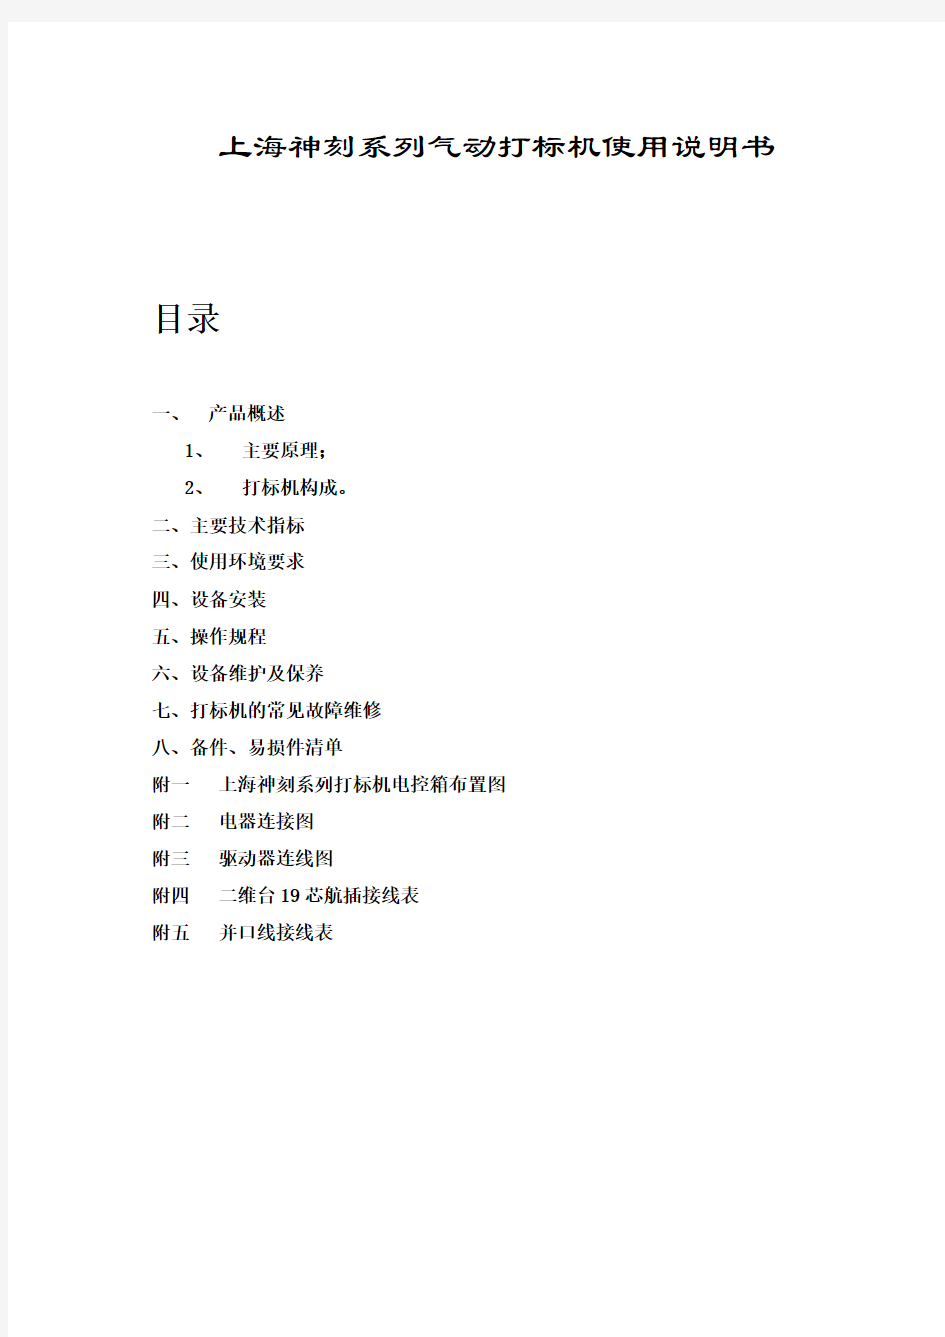 上海神刻系列气动打标机使用说明书档